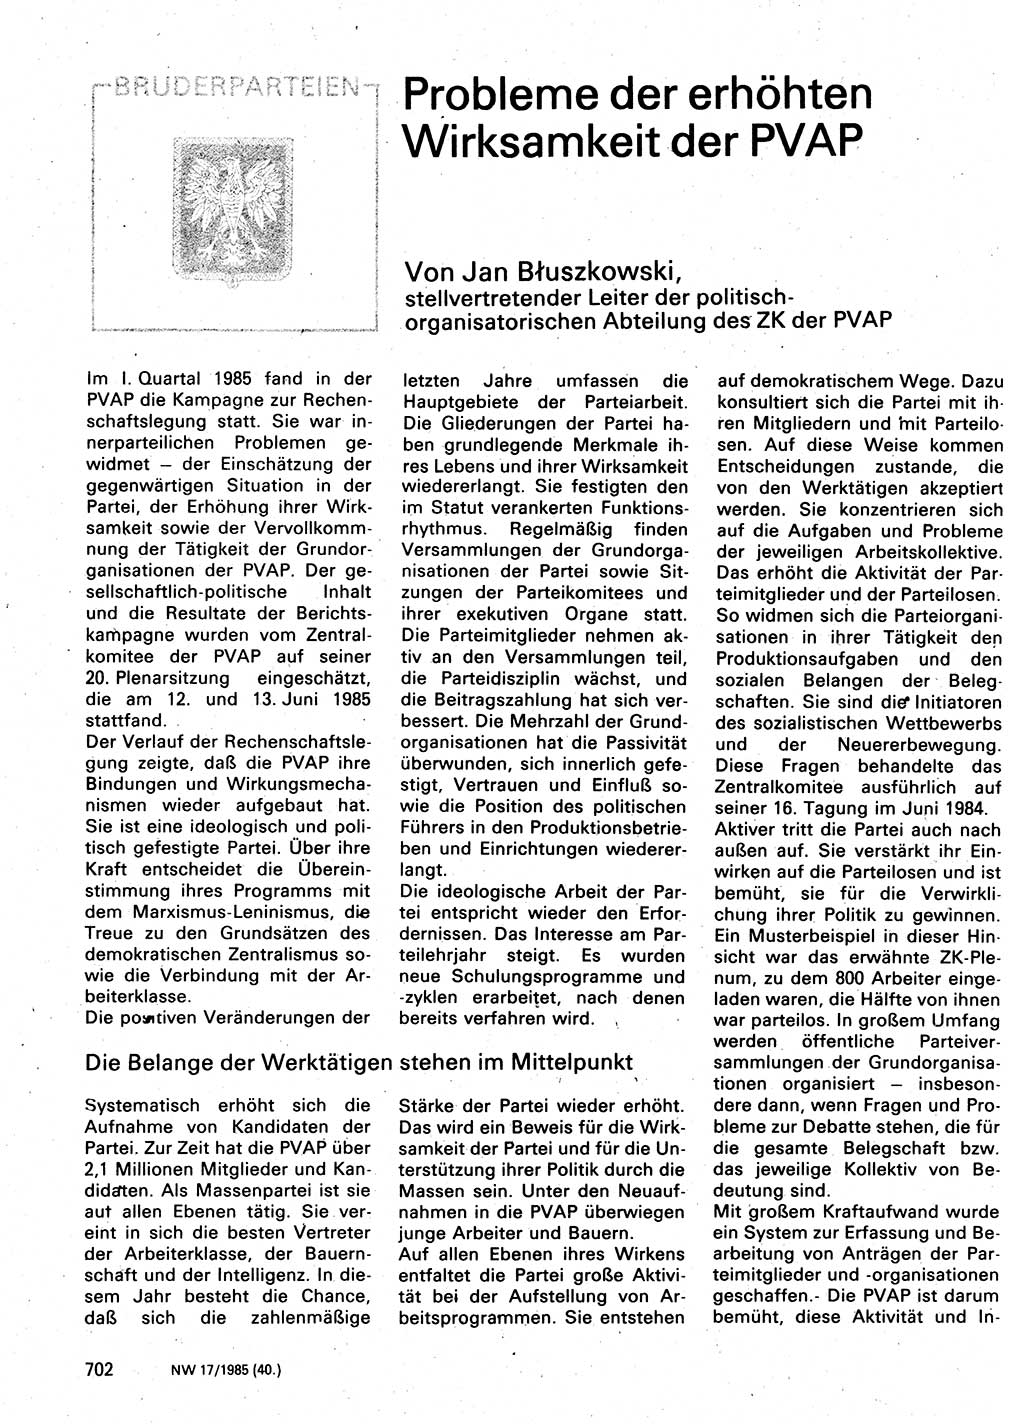 Neuer Weg (NW), Organ des Zentralkomitees (ZK) der SED (Sozialistische Einheitspartei Deutschlands) für Fragen des Parteilebens, 40. Jahrgang [Deutsche Demokratische Republik (DDR)] 1985, Seite 702 (NW ZK SED DDR 1985, S. 702)